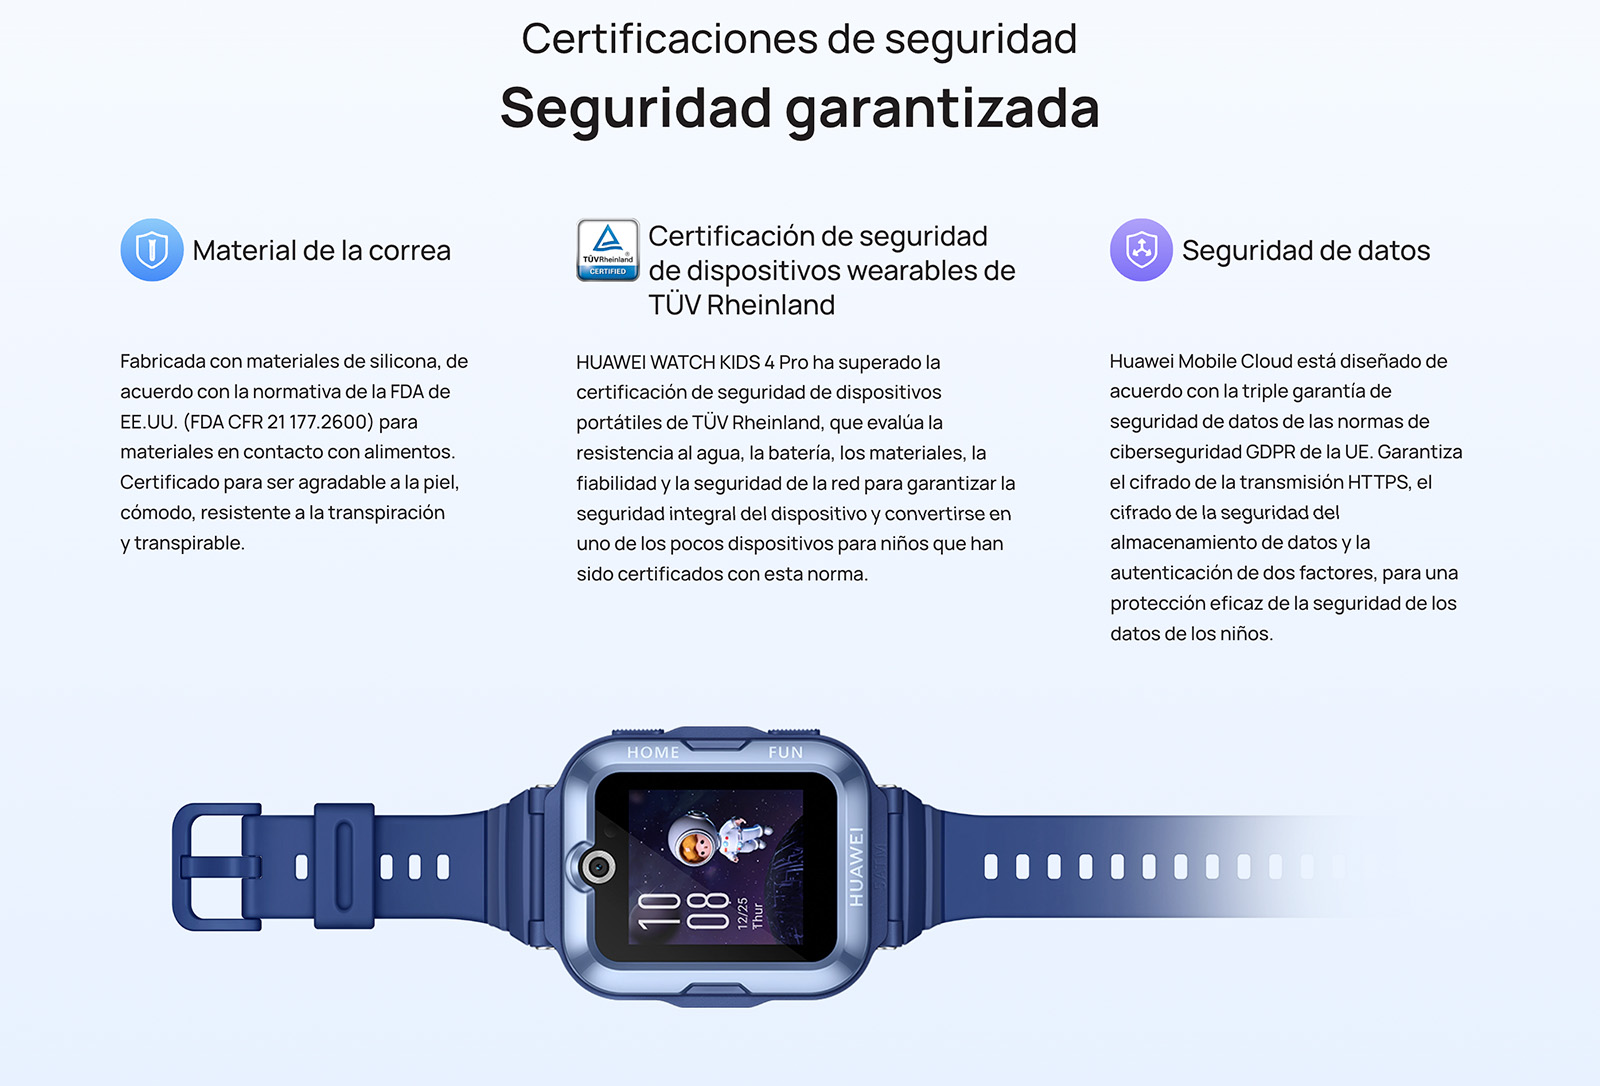 Smartwatch Huawei Watch Kids 4 Pro para niño